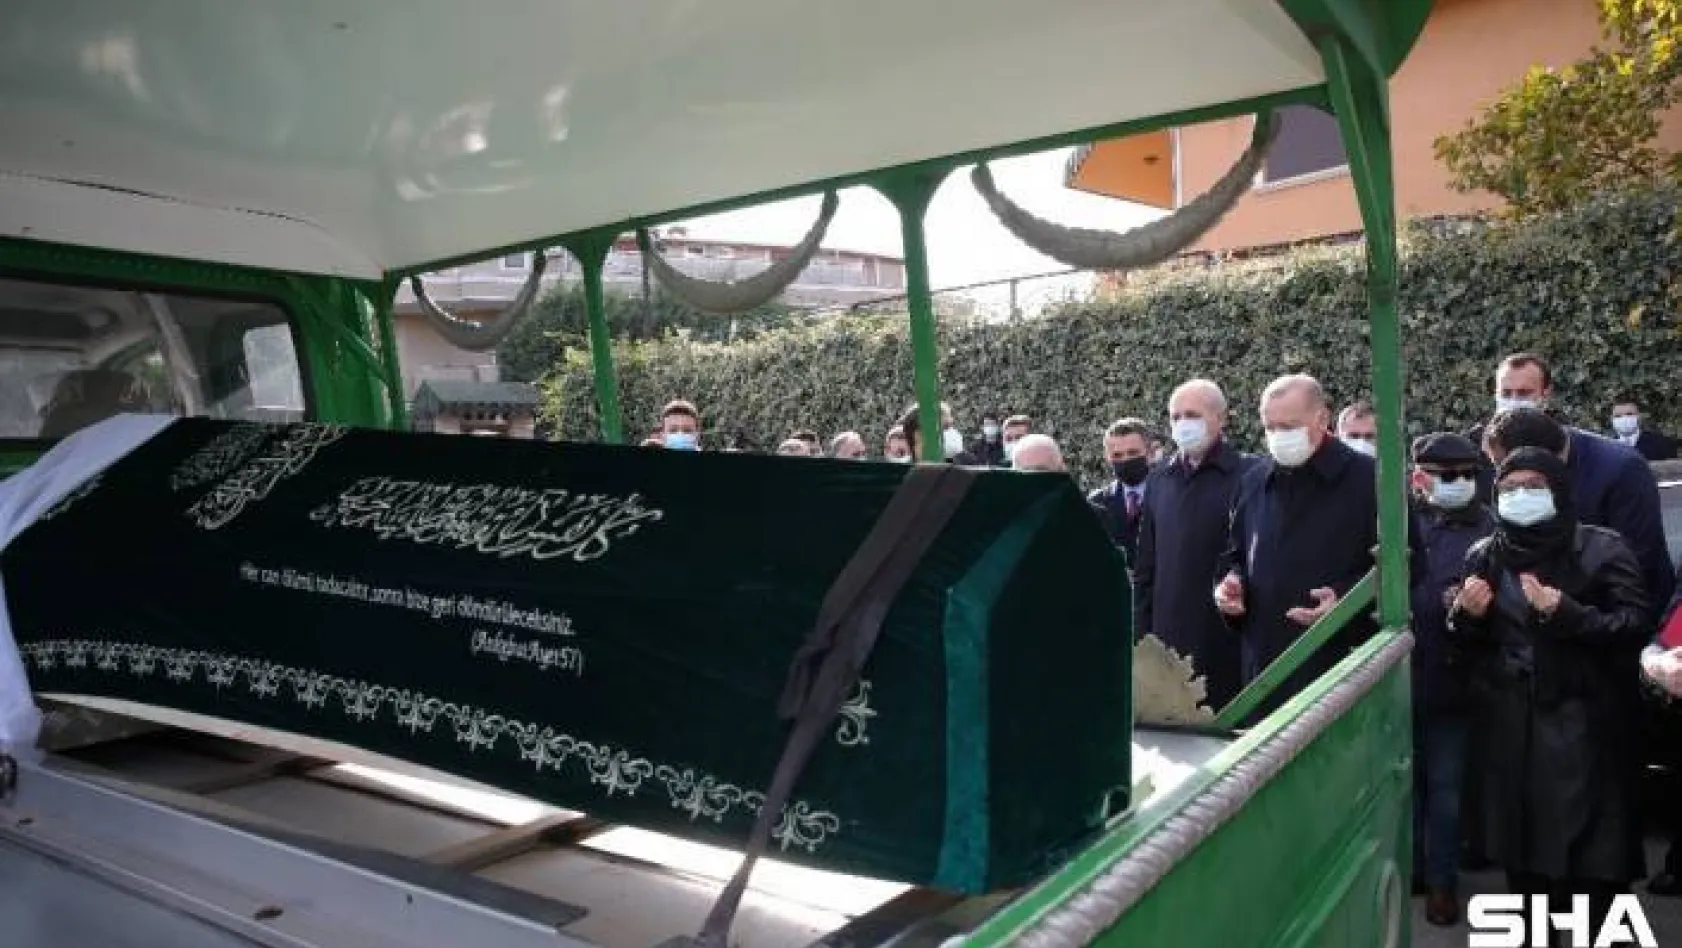 Cumhurbaşkanı Erdoğan, Ticaret Bakanı Pekcan'ın annesinin cenaze törenine katıldı